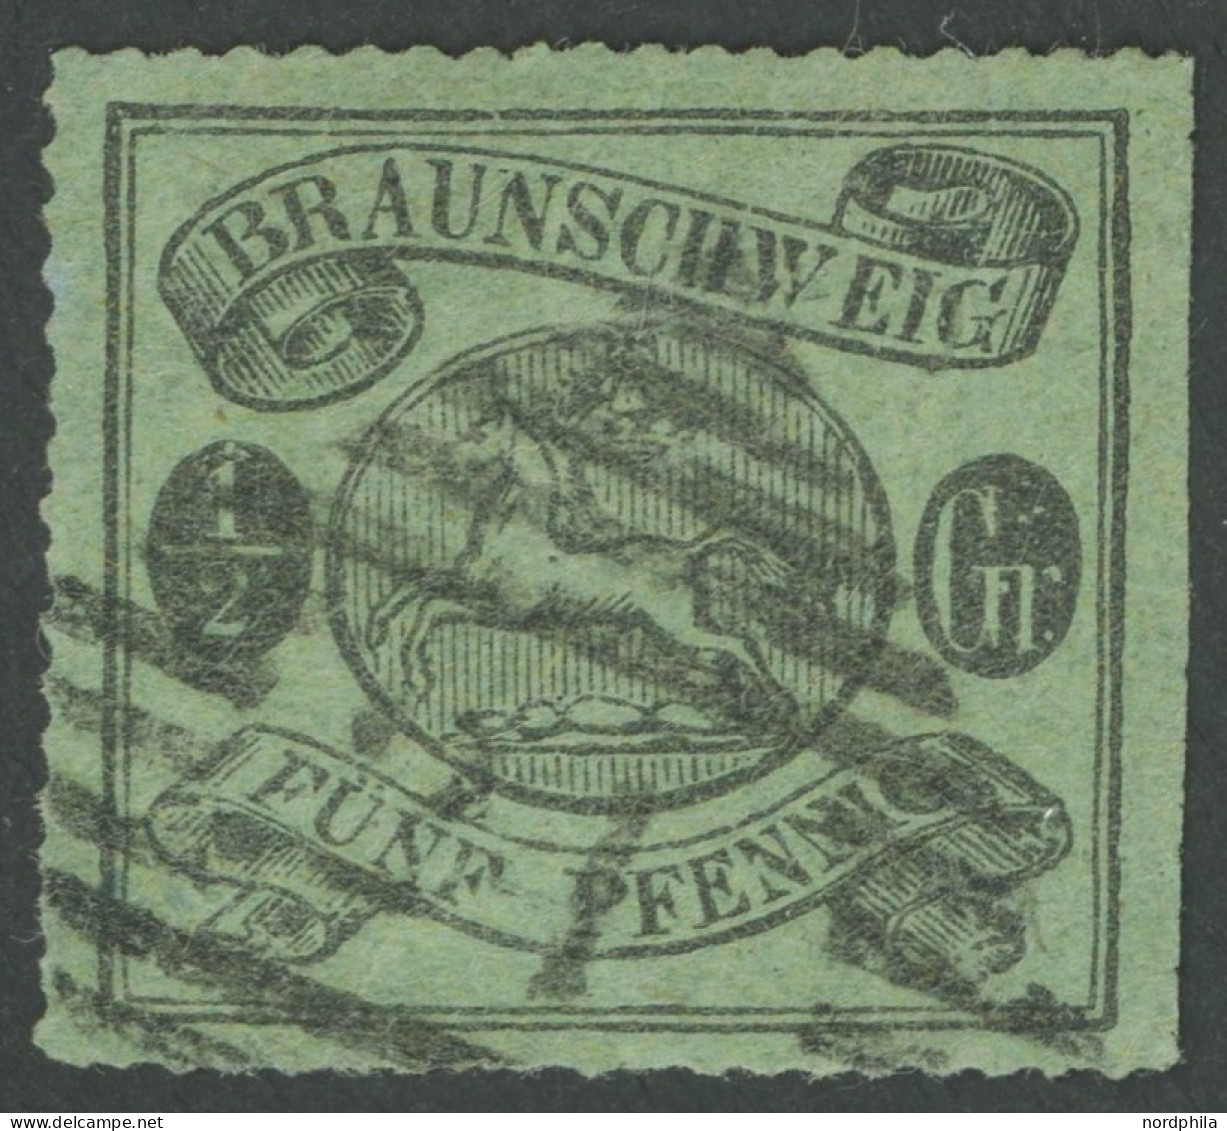 BRAUNSCHWEIG 10B O, 1864, 1/2 Gr. Schwarz Auf Lebhaftgraugrün, Bogenförmig Durchstochen 16, Nummernstempel 21 (Helmstedt - Braunschweig